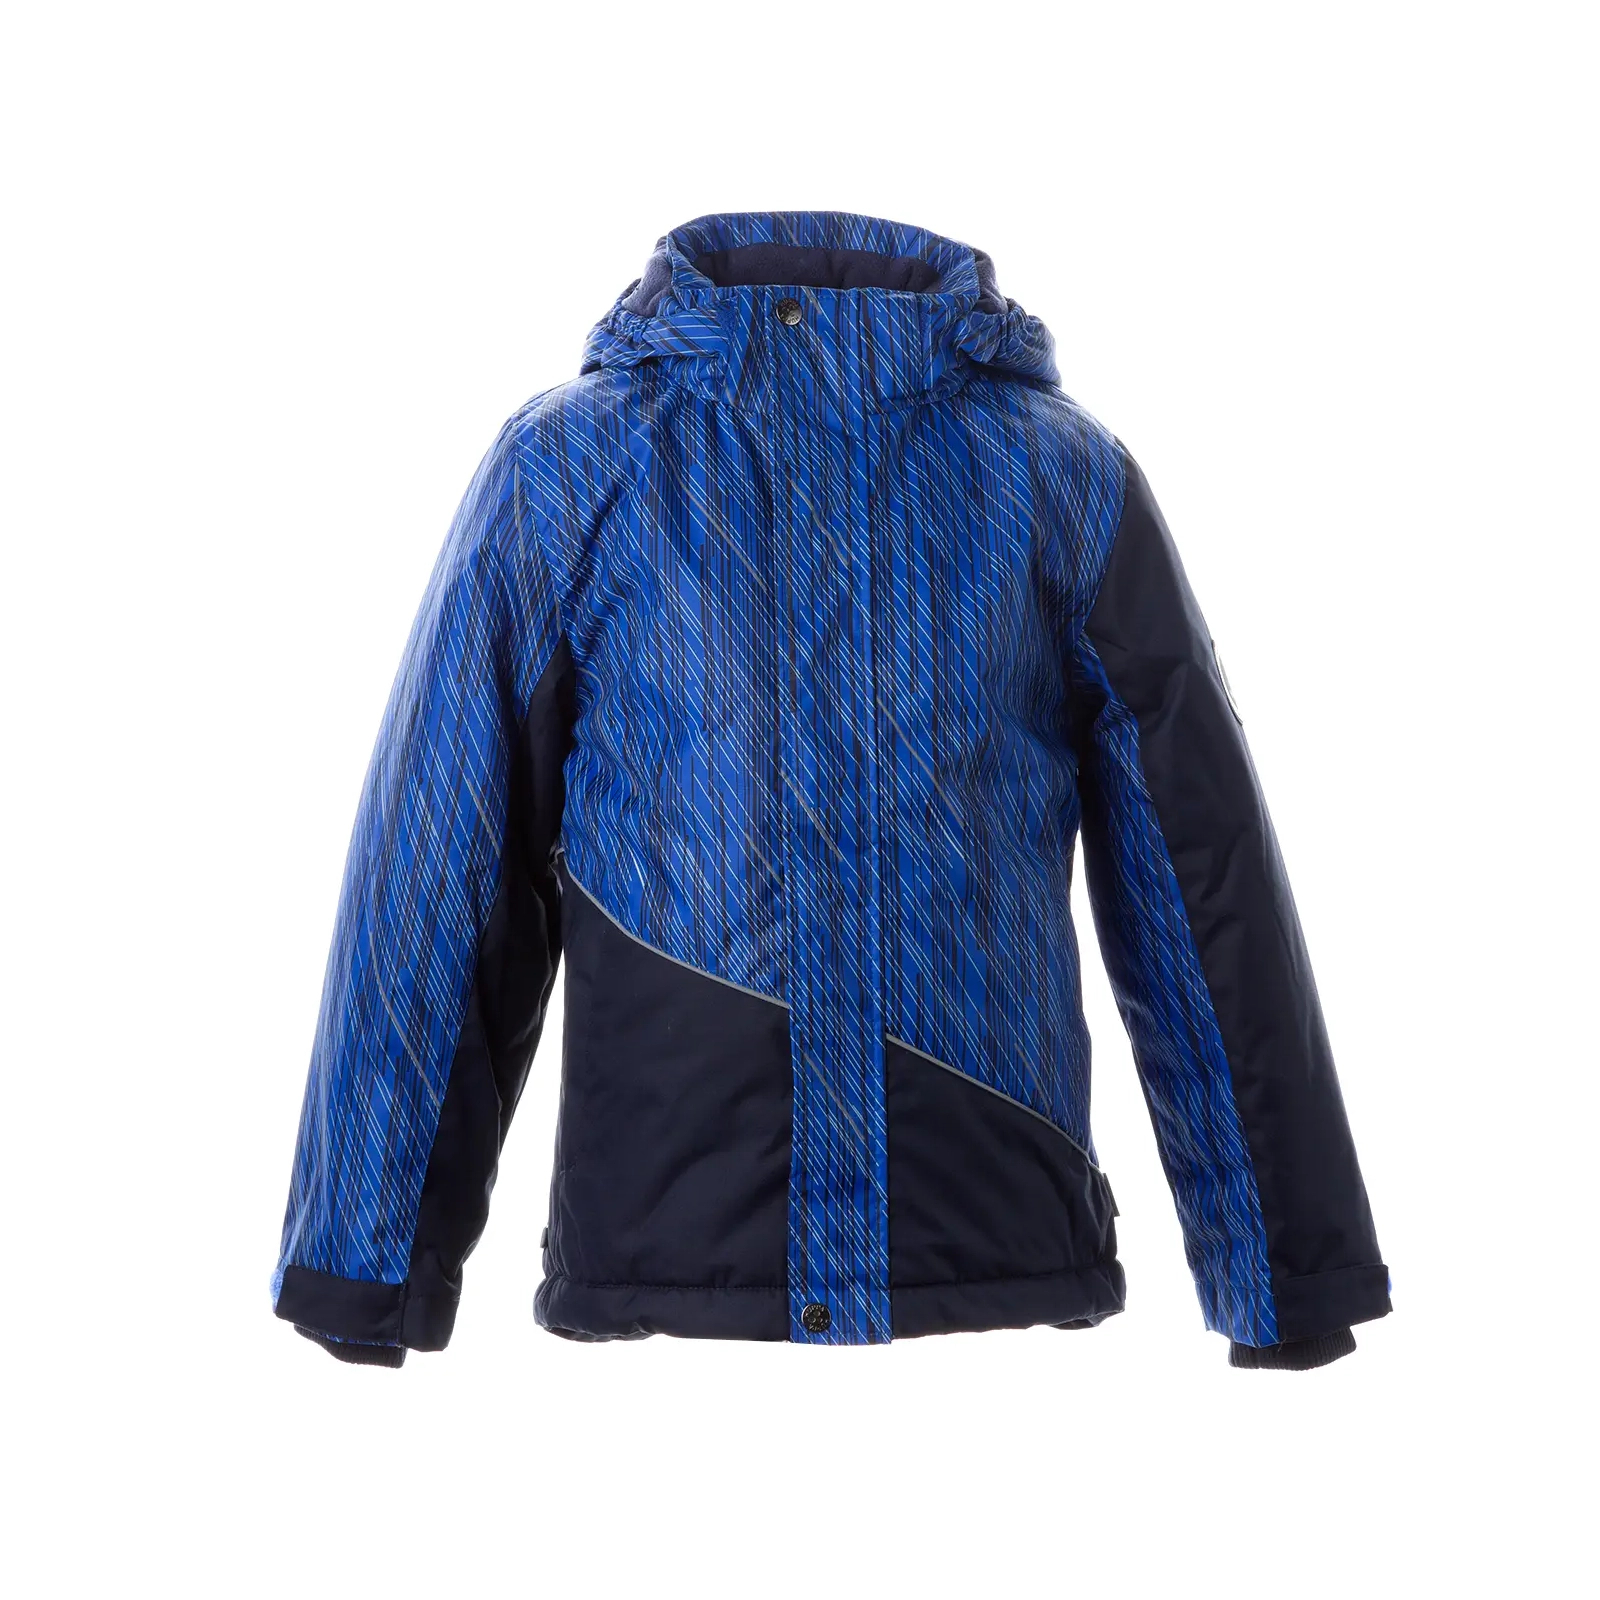 Куртка Huppa ALEX 1 17800130-1 синий с принтом/тёмно-синий 128 (4741468986401)